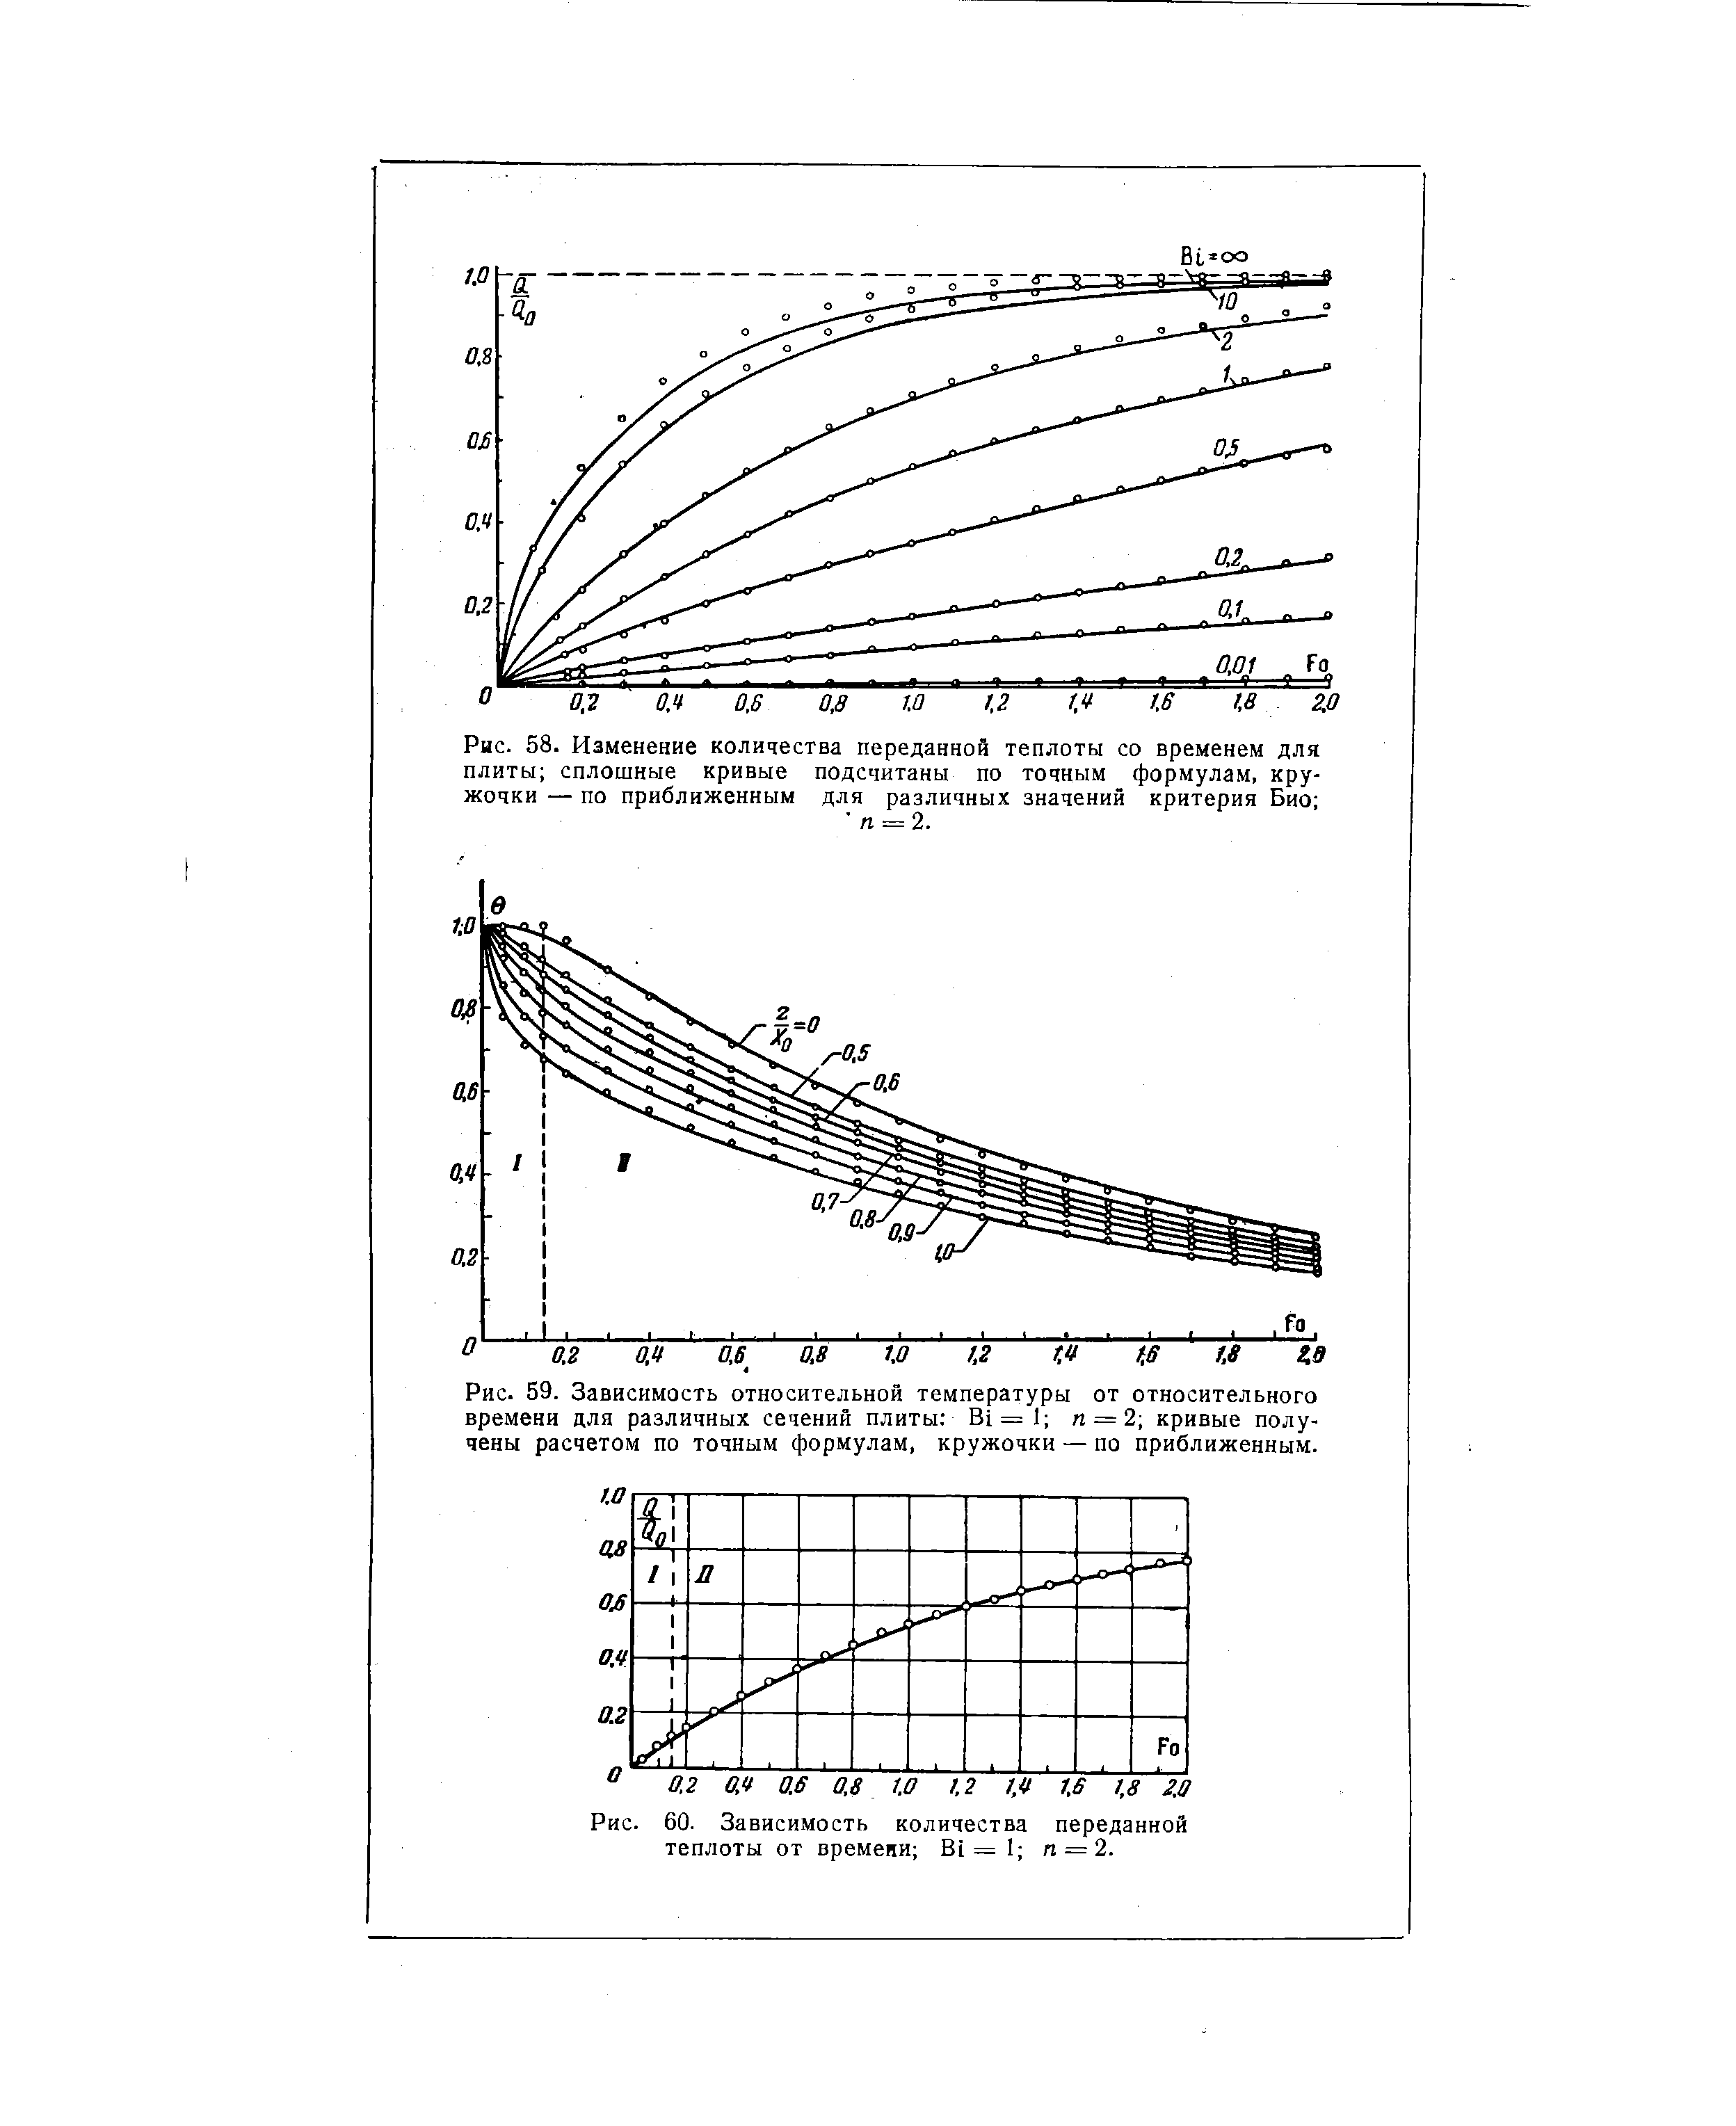 Рис. 59. Зависимость <a href="/info/276556">относительной температуры</a> от относительного времени для различных сечений плиты Bi= 1 п = 2 кривые получены расчетом по точным формулам, кружочки — по приближенным.
